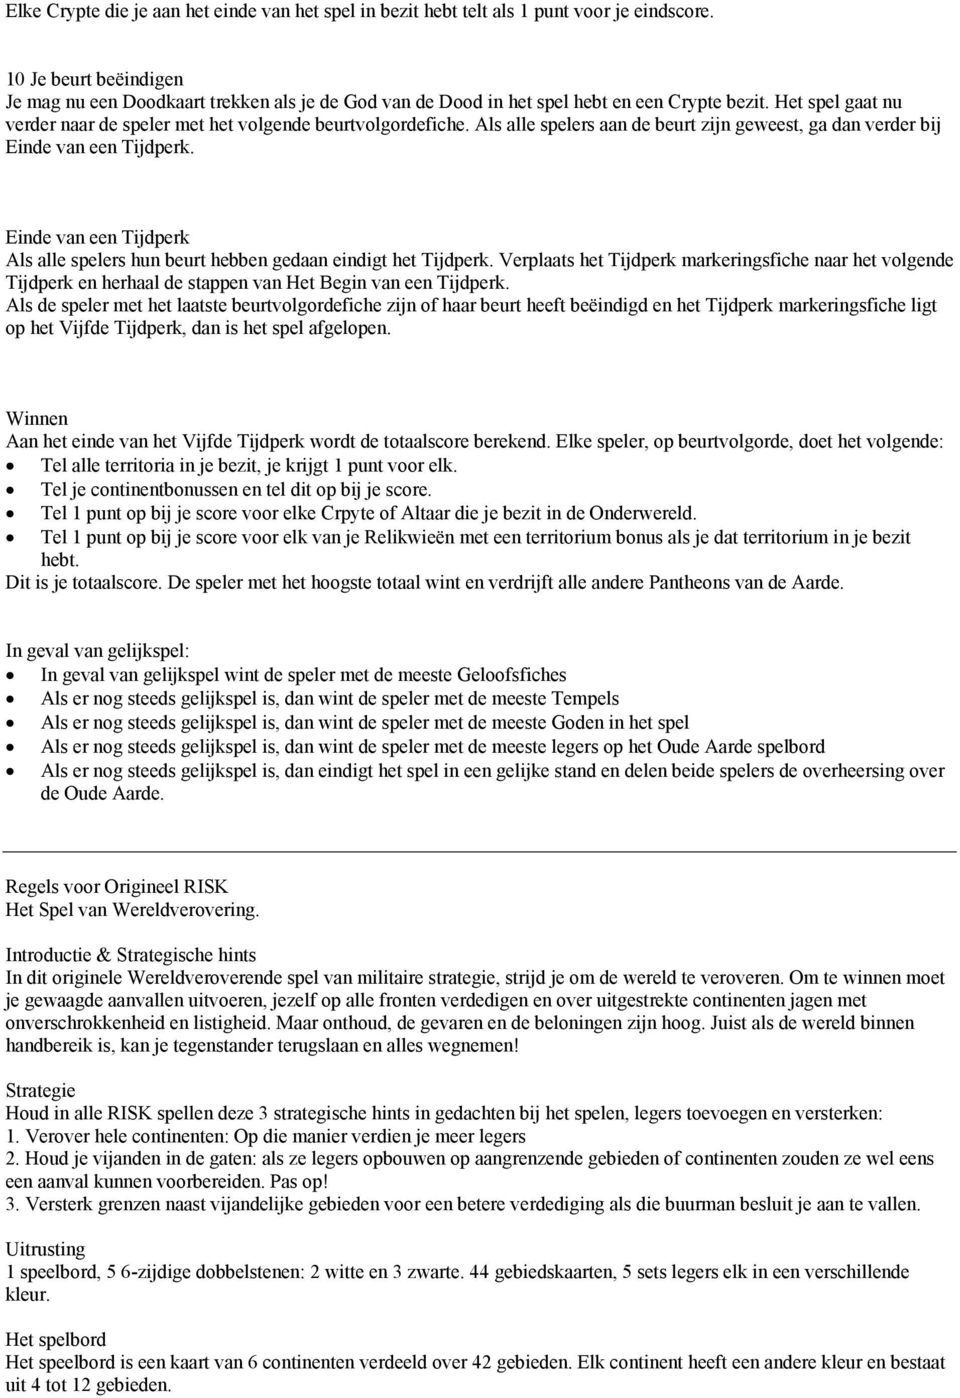 paraplu Bijzettafeltje Luiheid Spelregels Risk Godstorm - PDF Gratis download